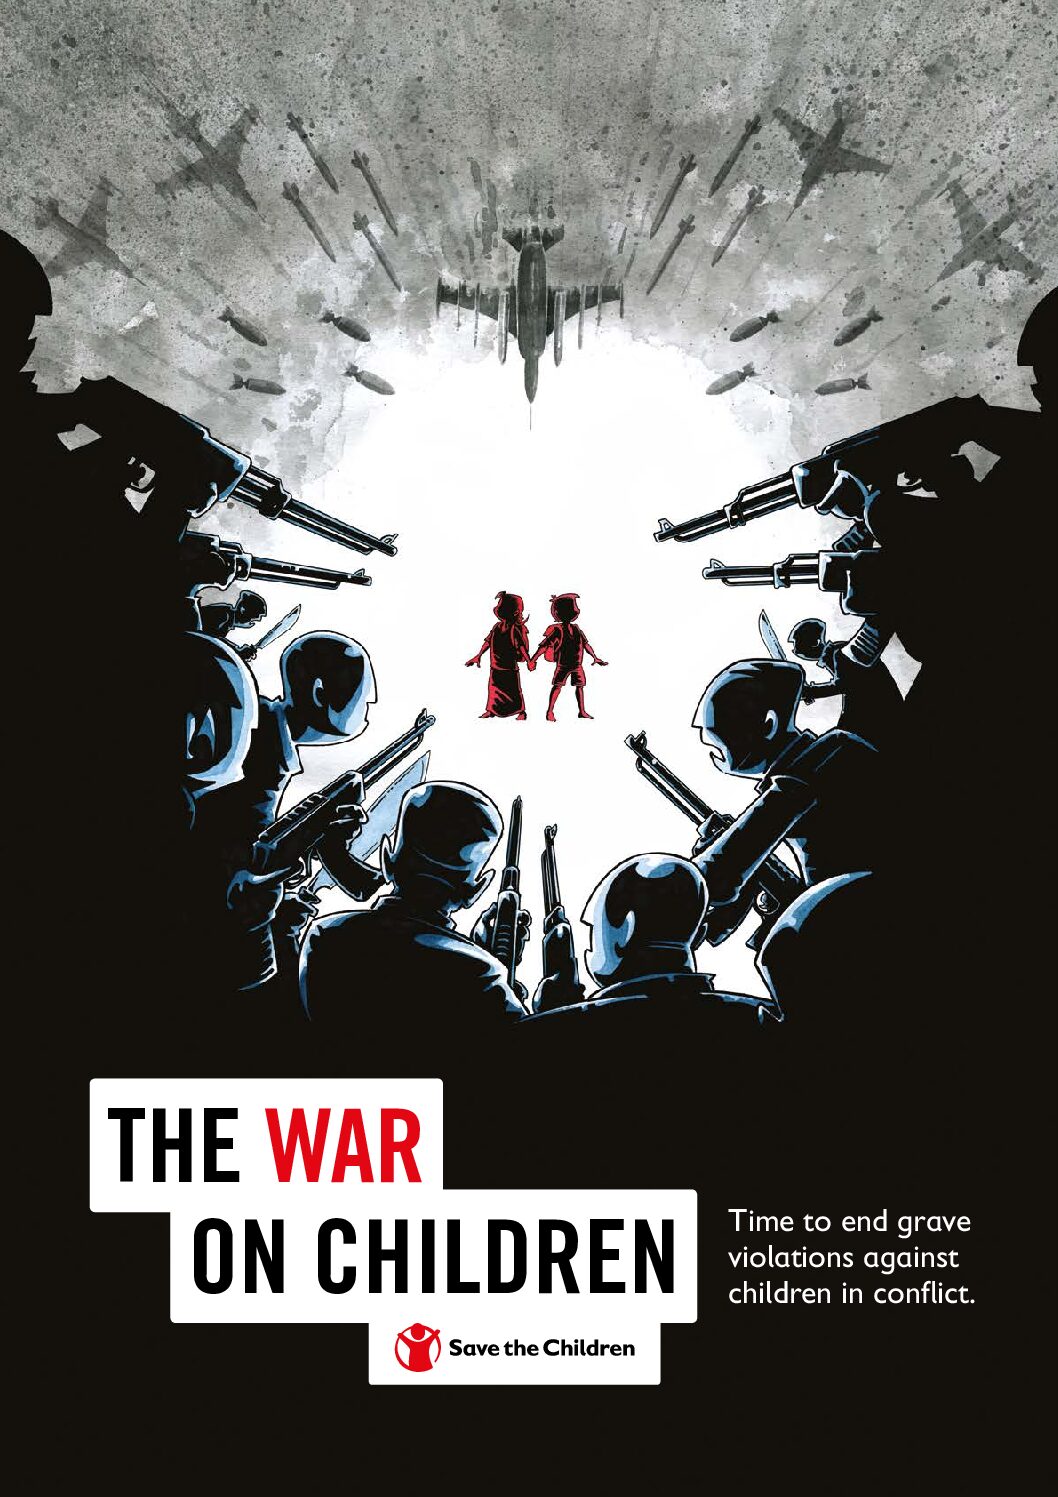 The war on children